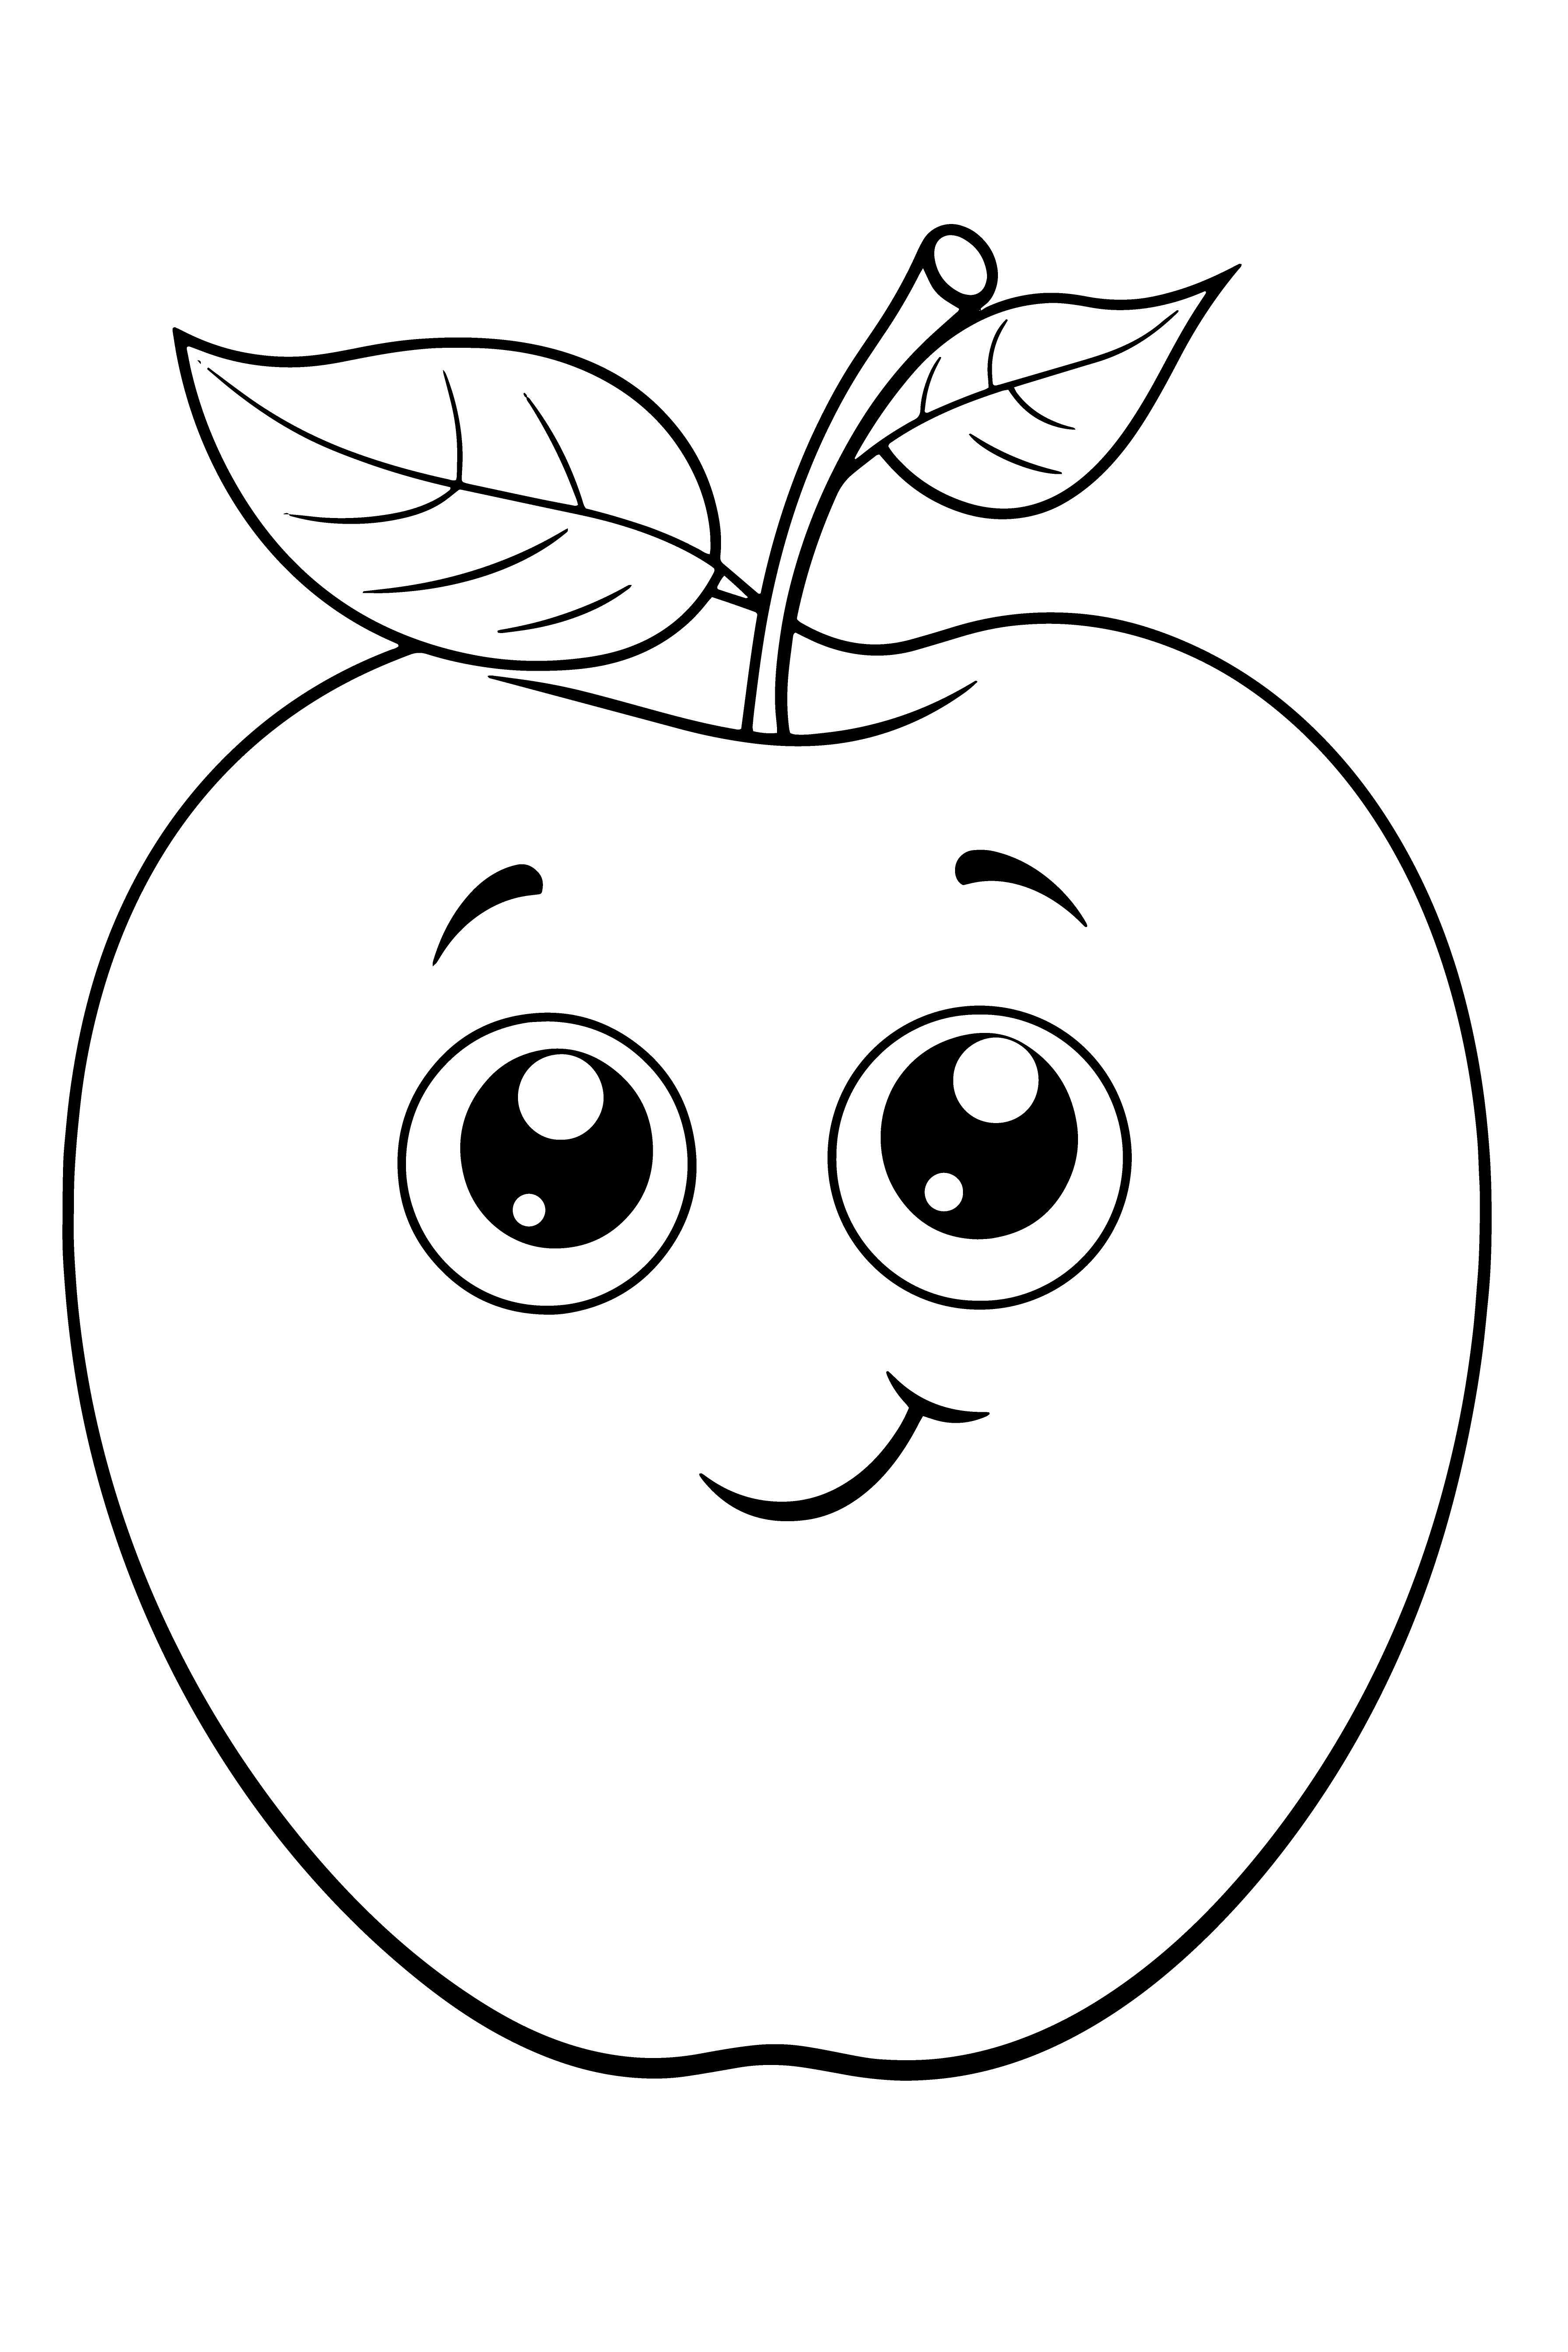 Раскраска мультяшное яблоко с глазами и улыбкой формата А4 в высоком качестве